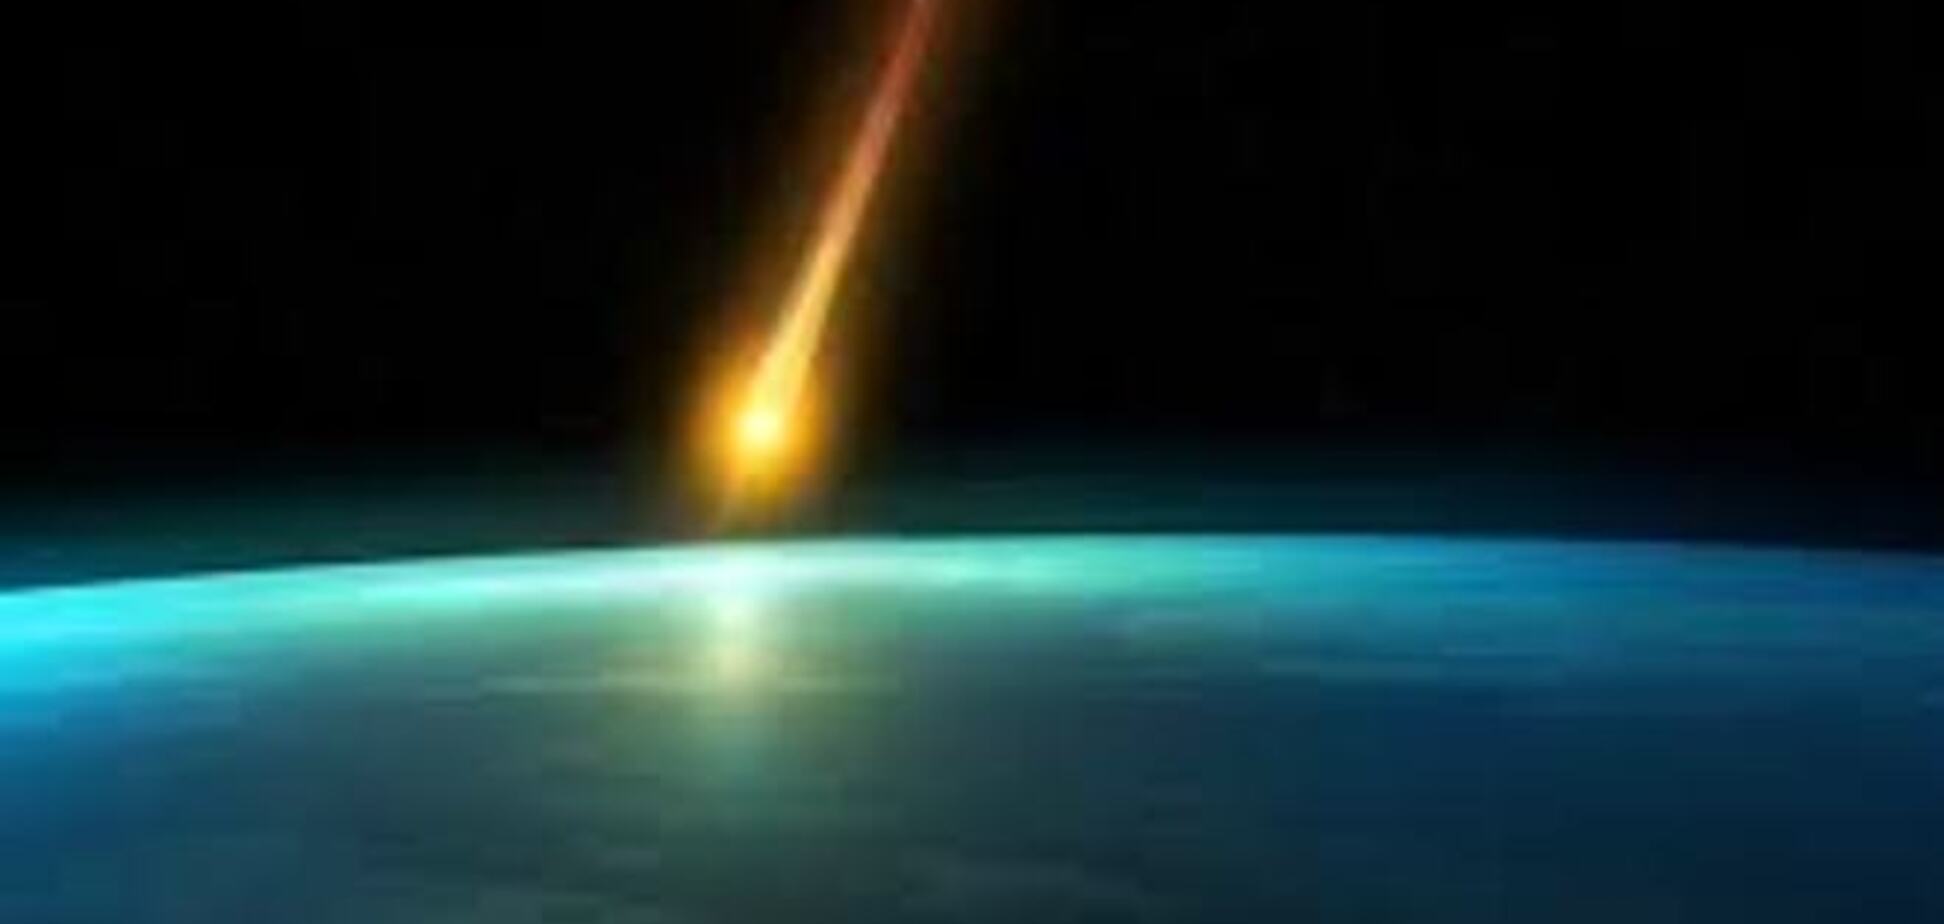 В ночь на 9 мая на Землю упадет военный спутник СССР